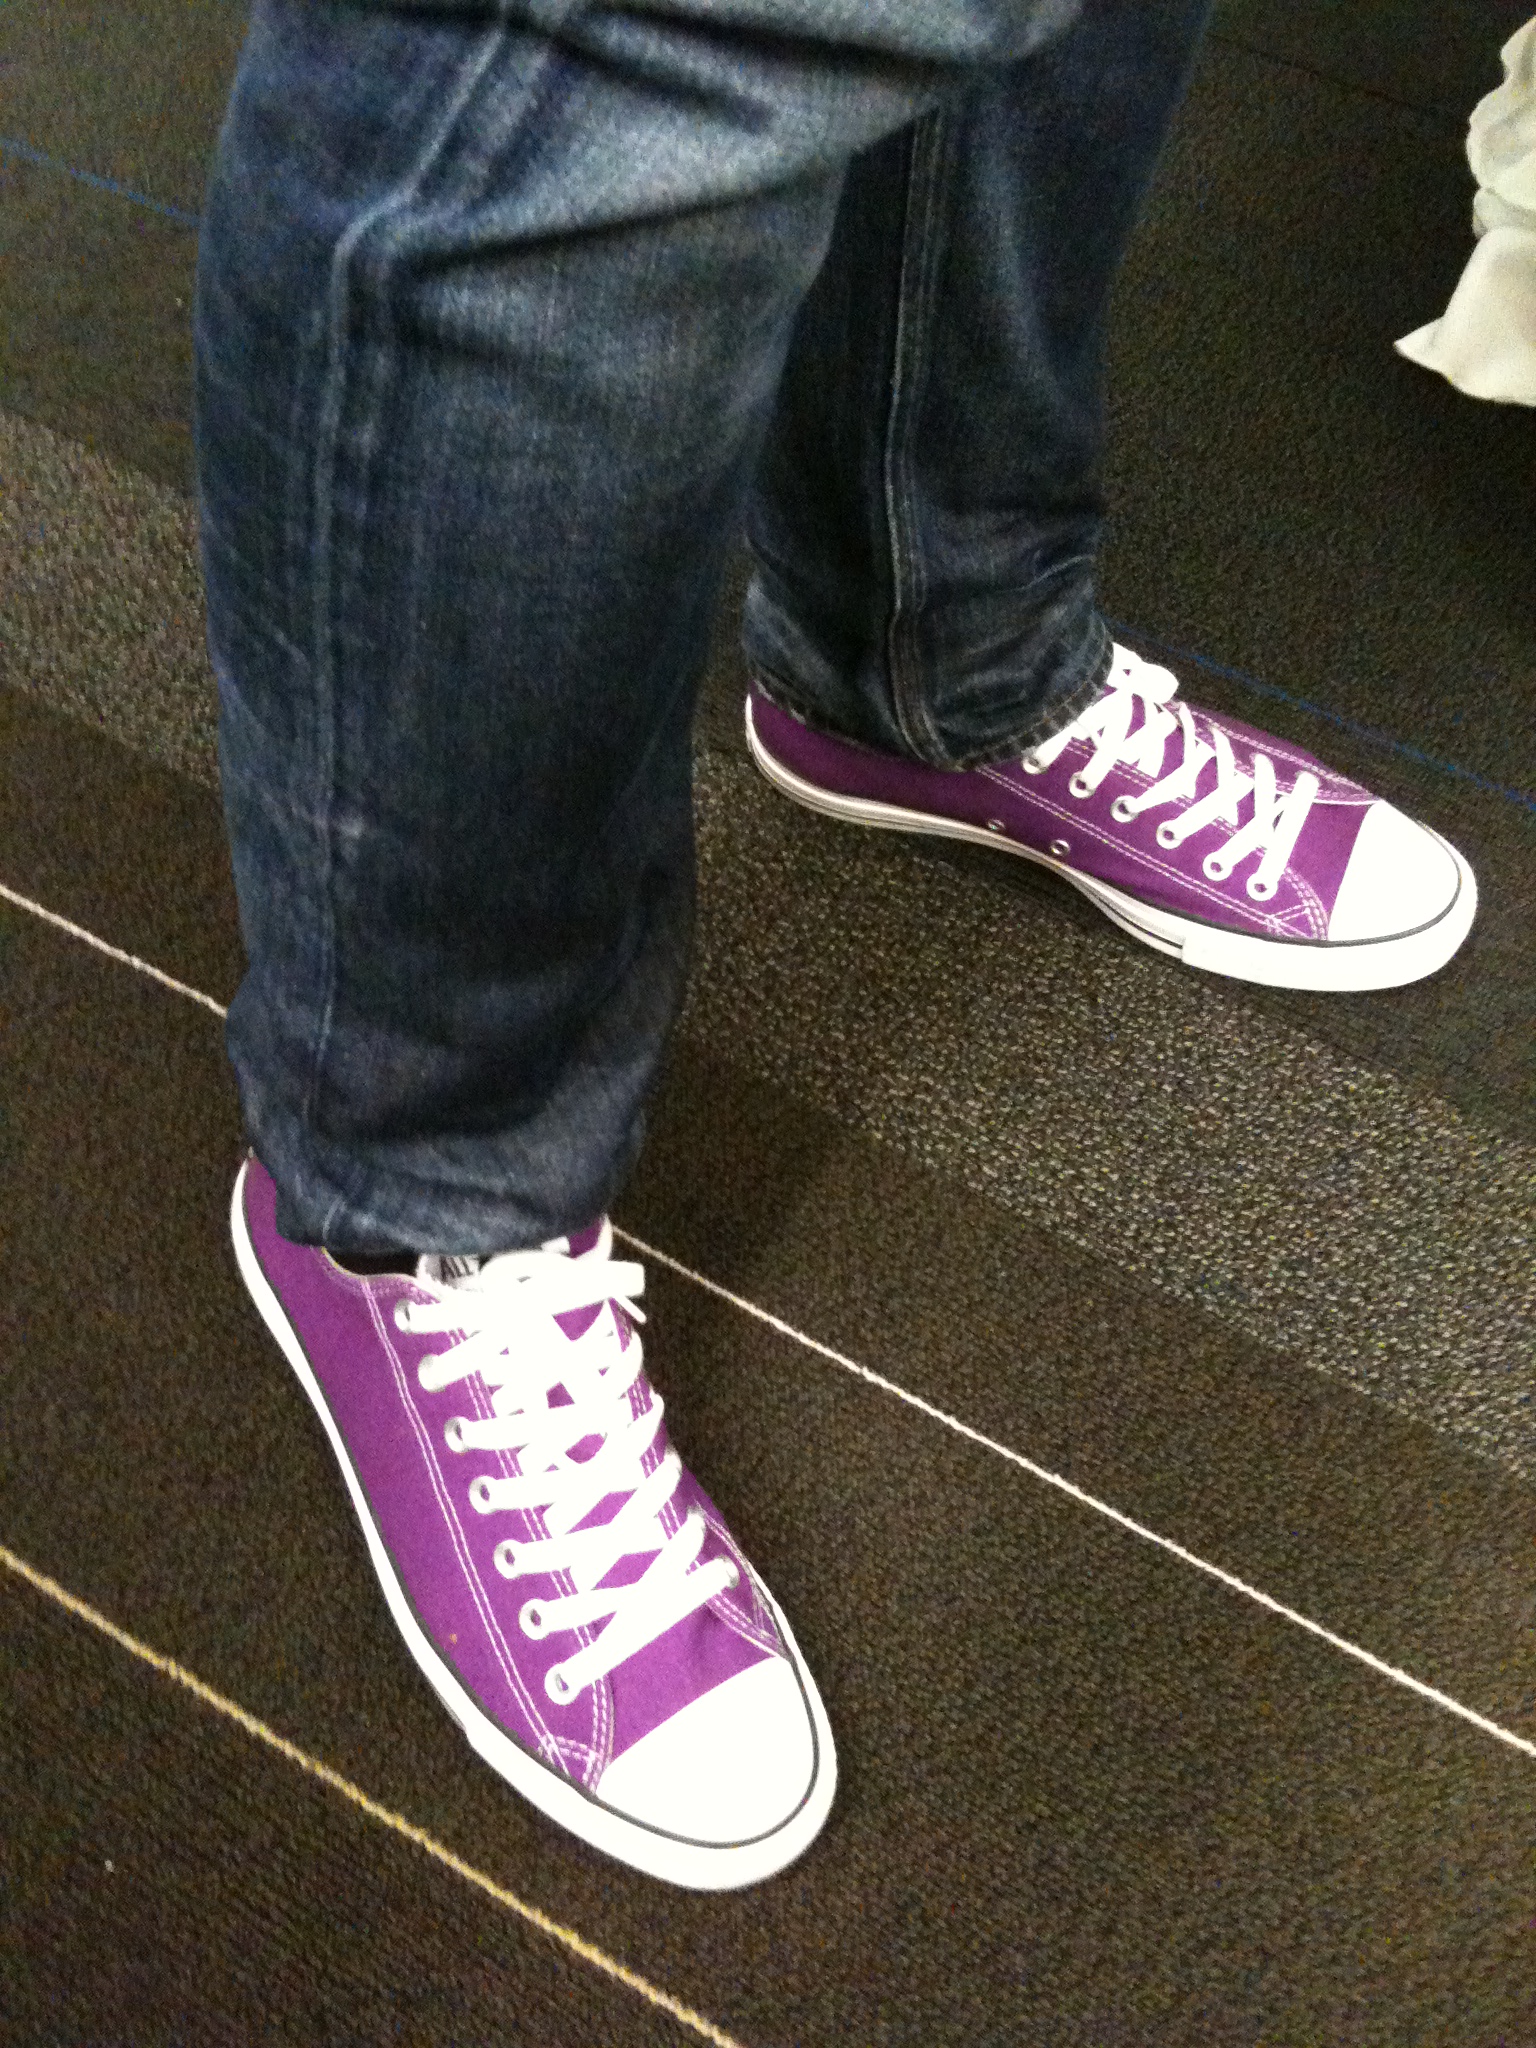 purple converse mens shoes